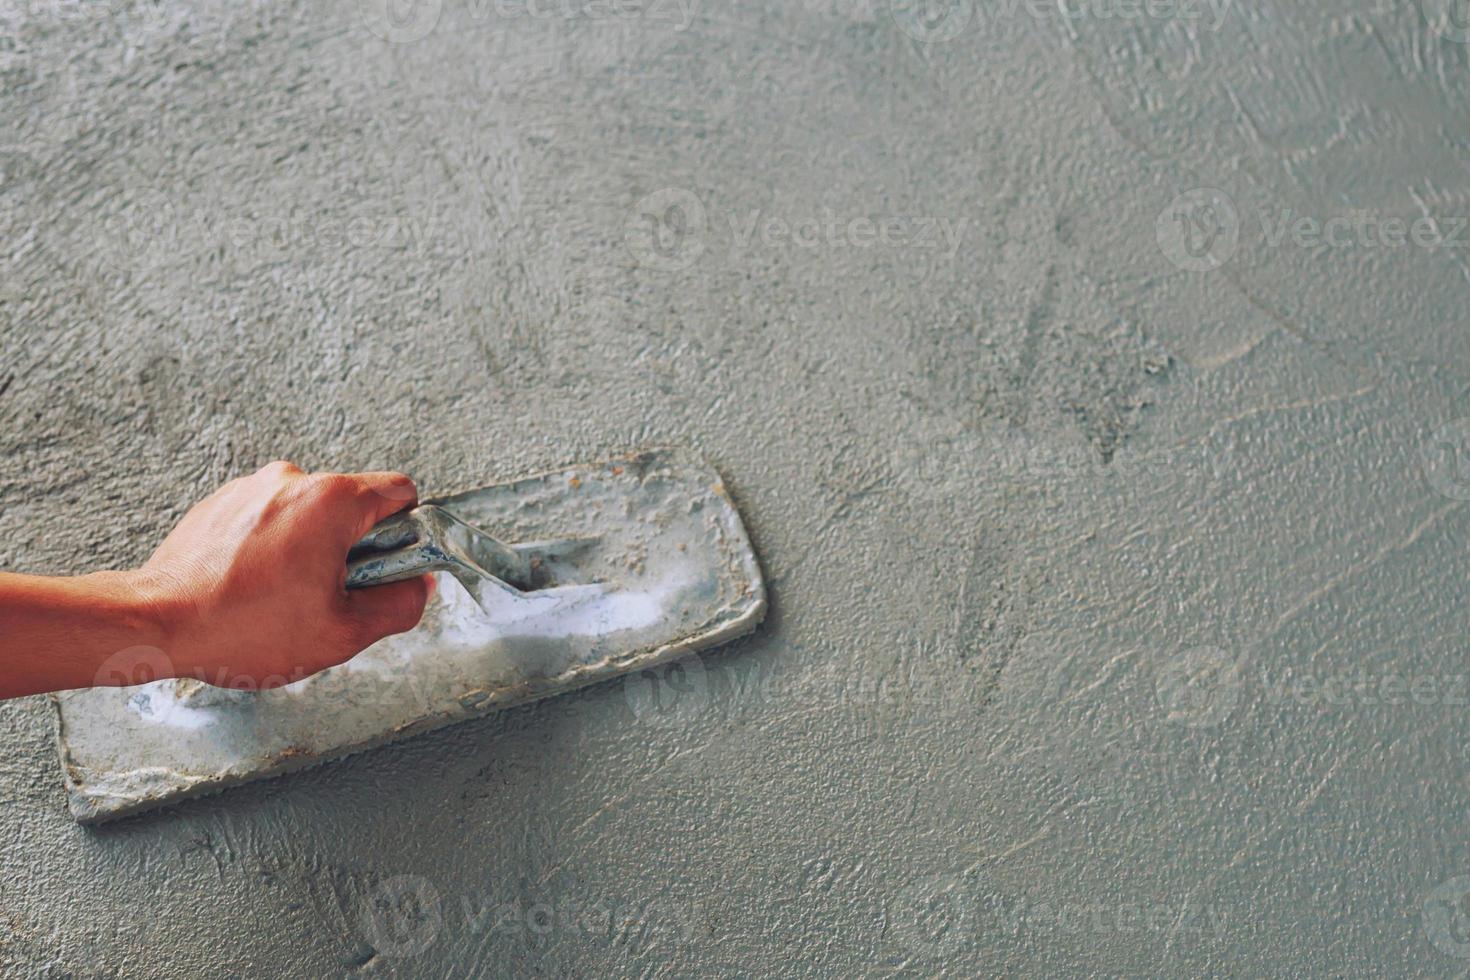 mistura de concreto é a introdução de cimento, pedra, areia e água, bem como produtos químicos adicionados e outros materiais misturados. misture e misture na proporção especificada para obter um concreto consistente. foto